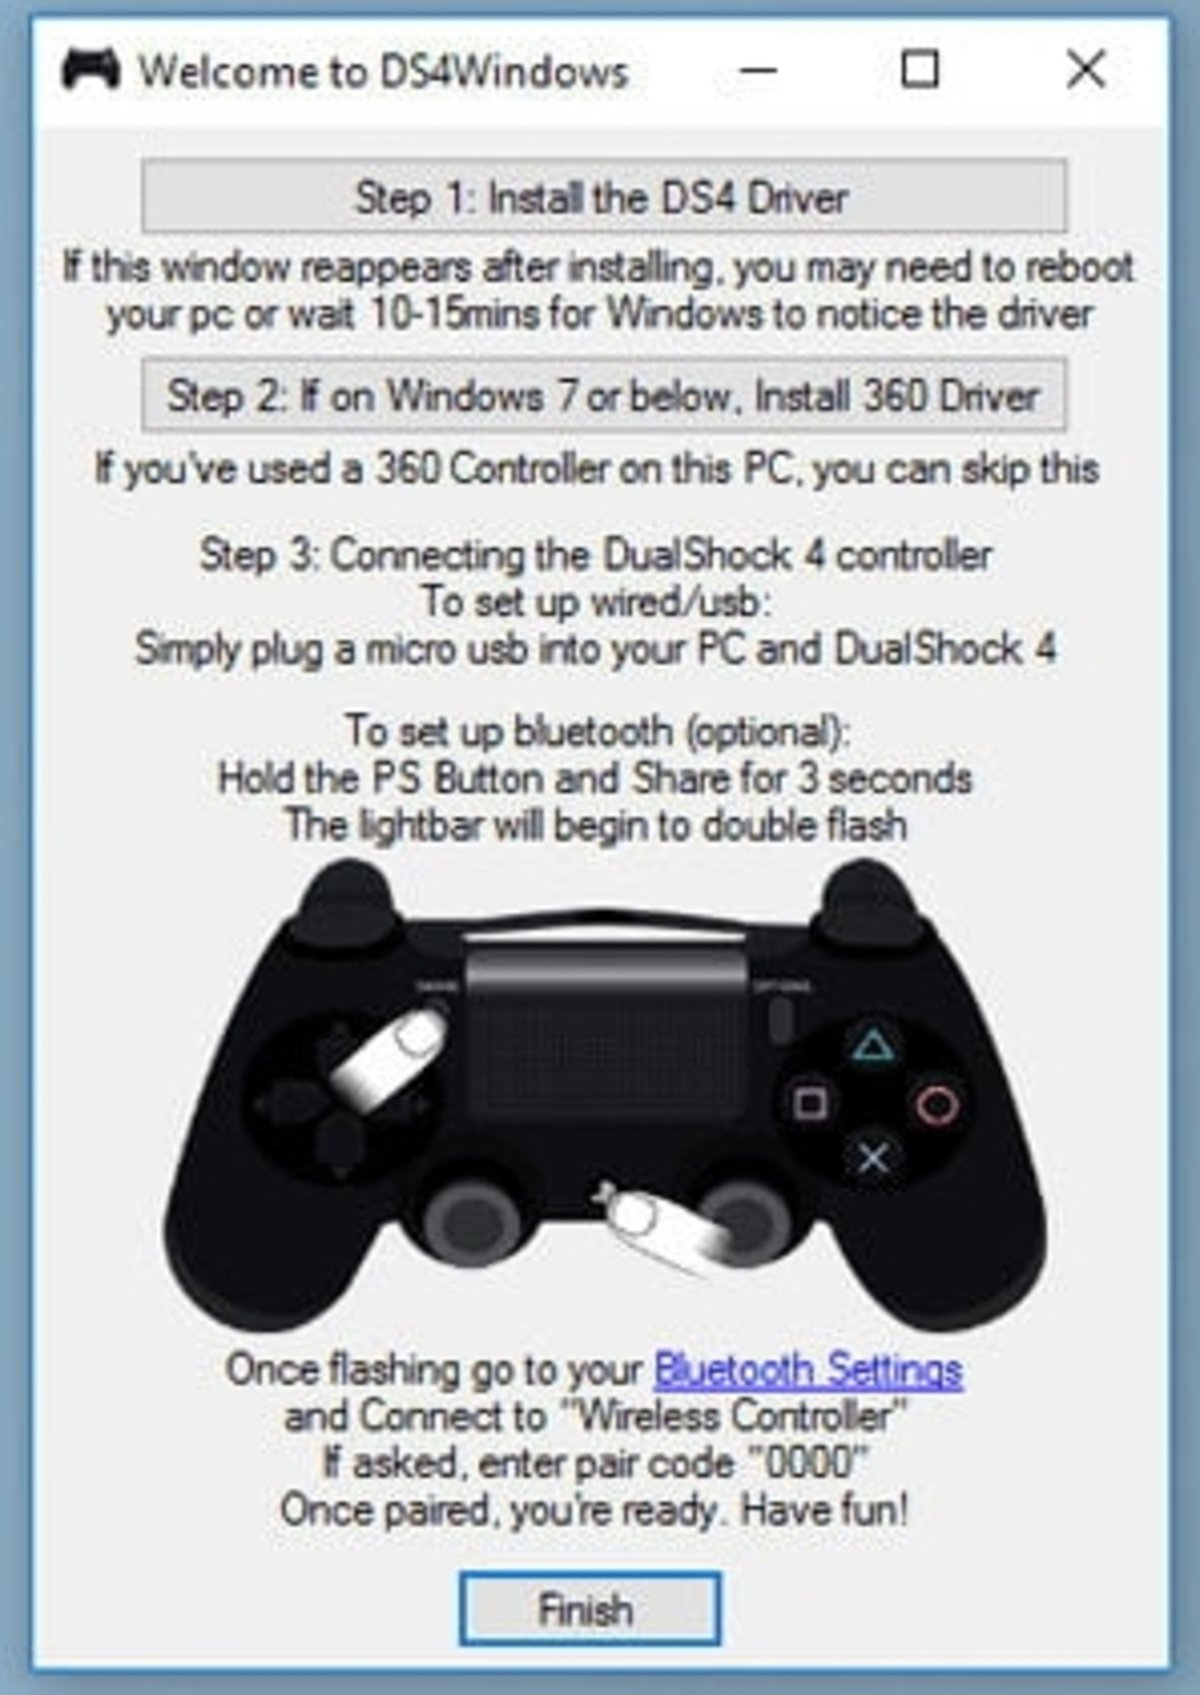 Как джойстик пс 4 подключить к пк. Подключить джойстик Dualshock 4 к компьютеру. Подключить геймпад дцал ШОК К ПС. Как подключить контроллер к ps4. Подключить геймпад ps4 Dualshock к Windows 7.